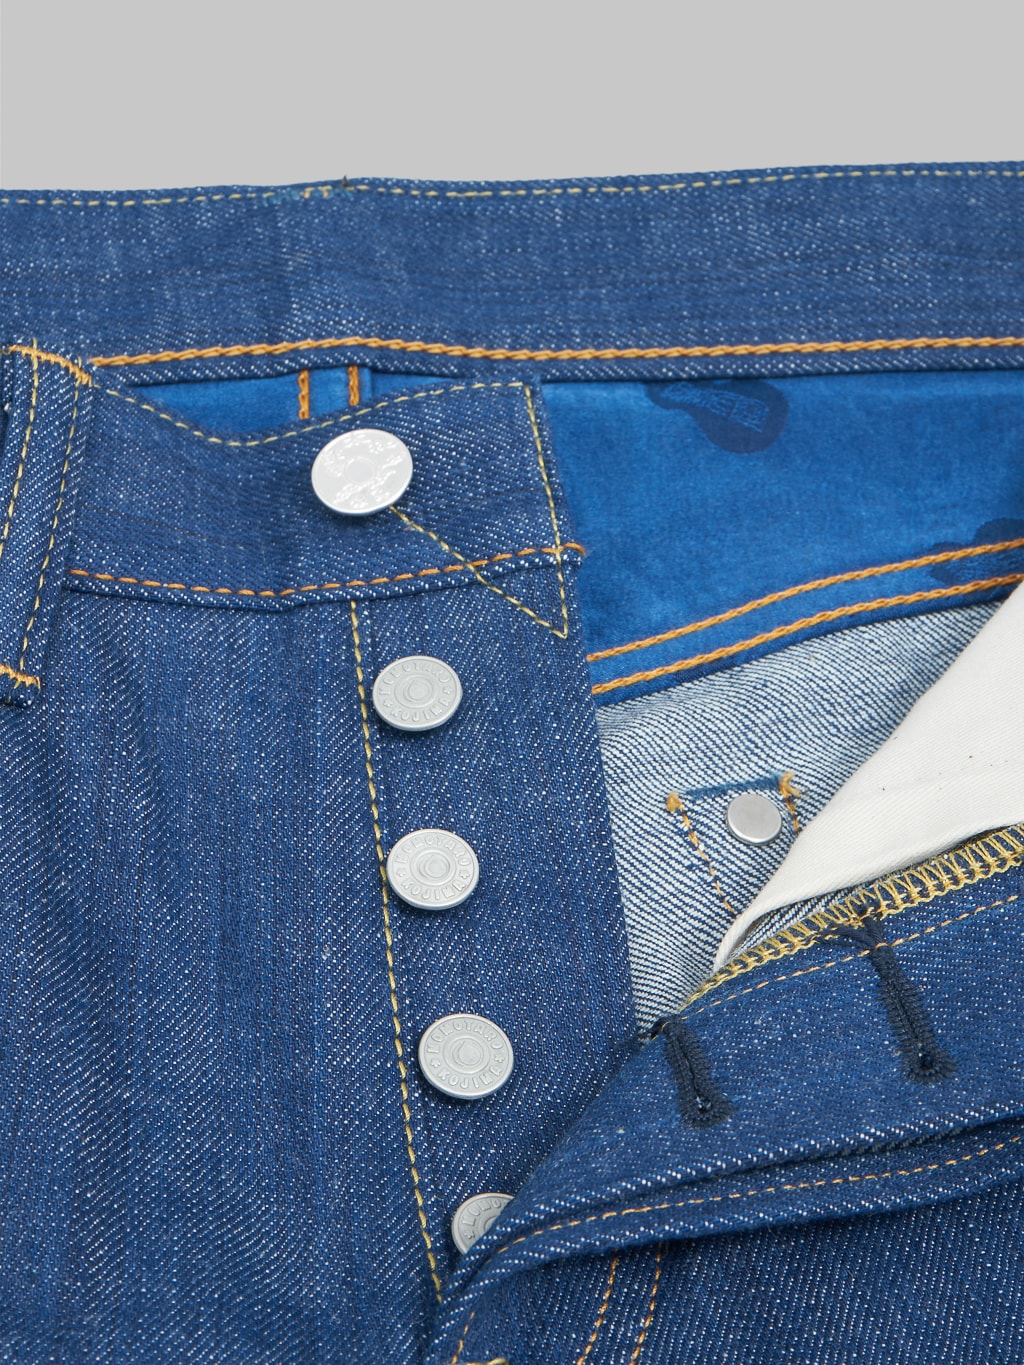 momotaro 0605 ai natural indigo dyed natural tapered denim jeans buttons